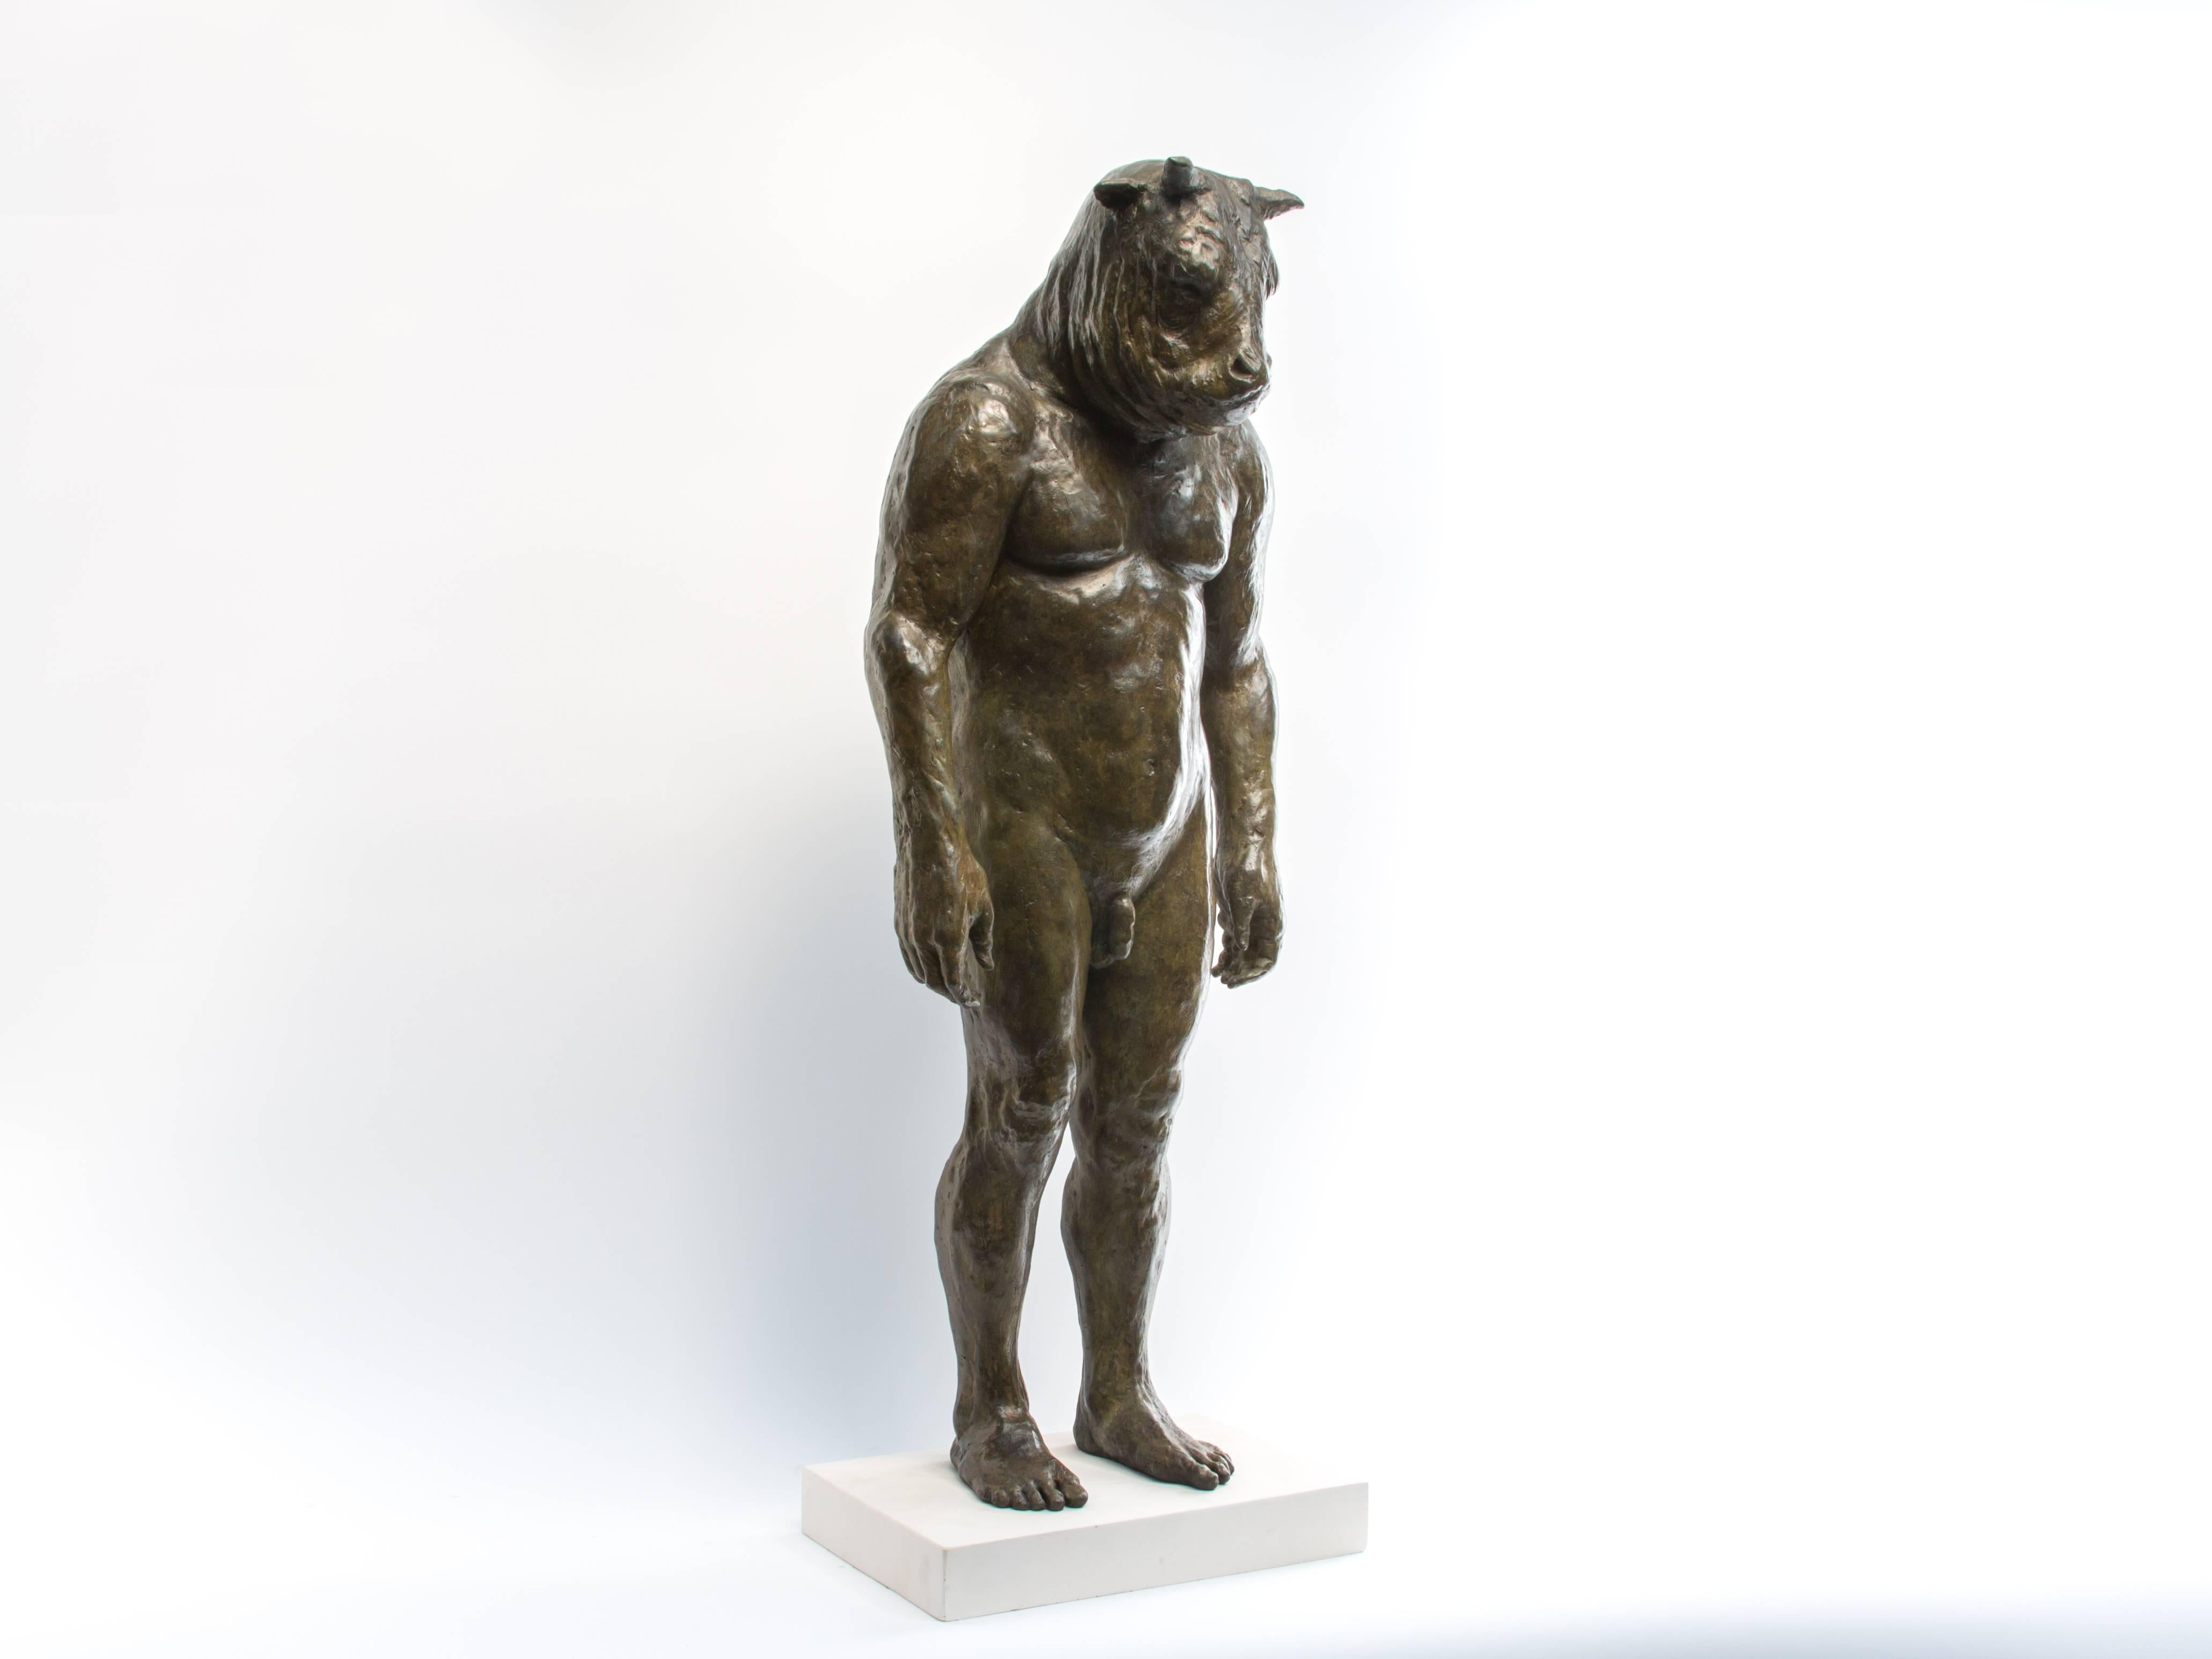 Beth Carter Nude Sculpture - Standing Minotaur II, bronze sculpture